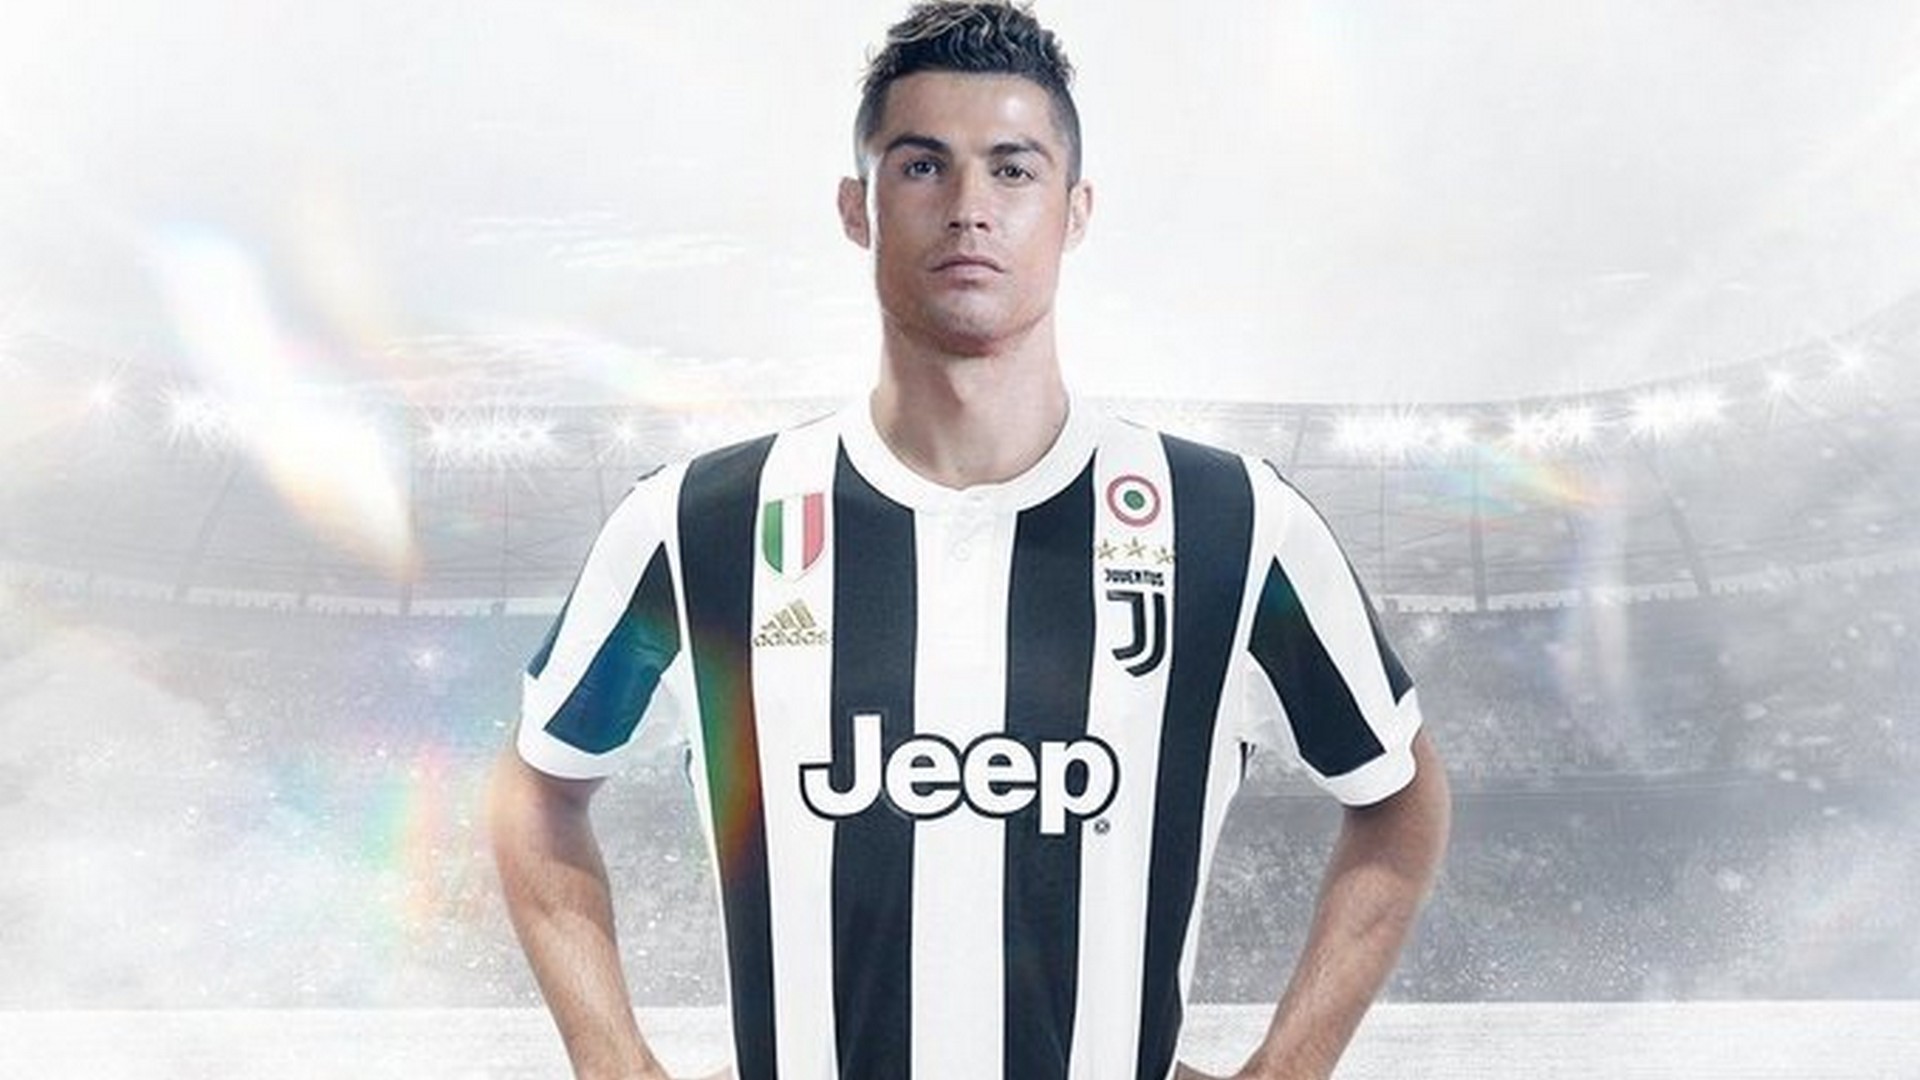 Start Download - Ronaldo Juventus , HD Wallpaper & Backgrounds